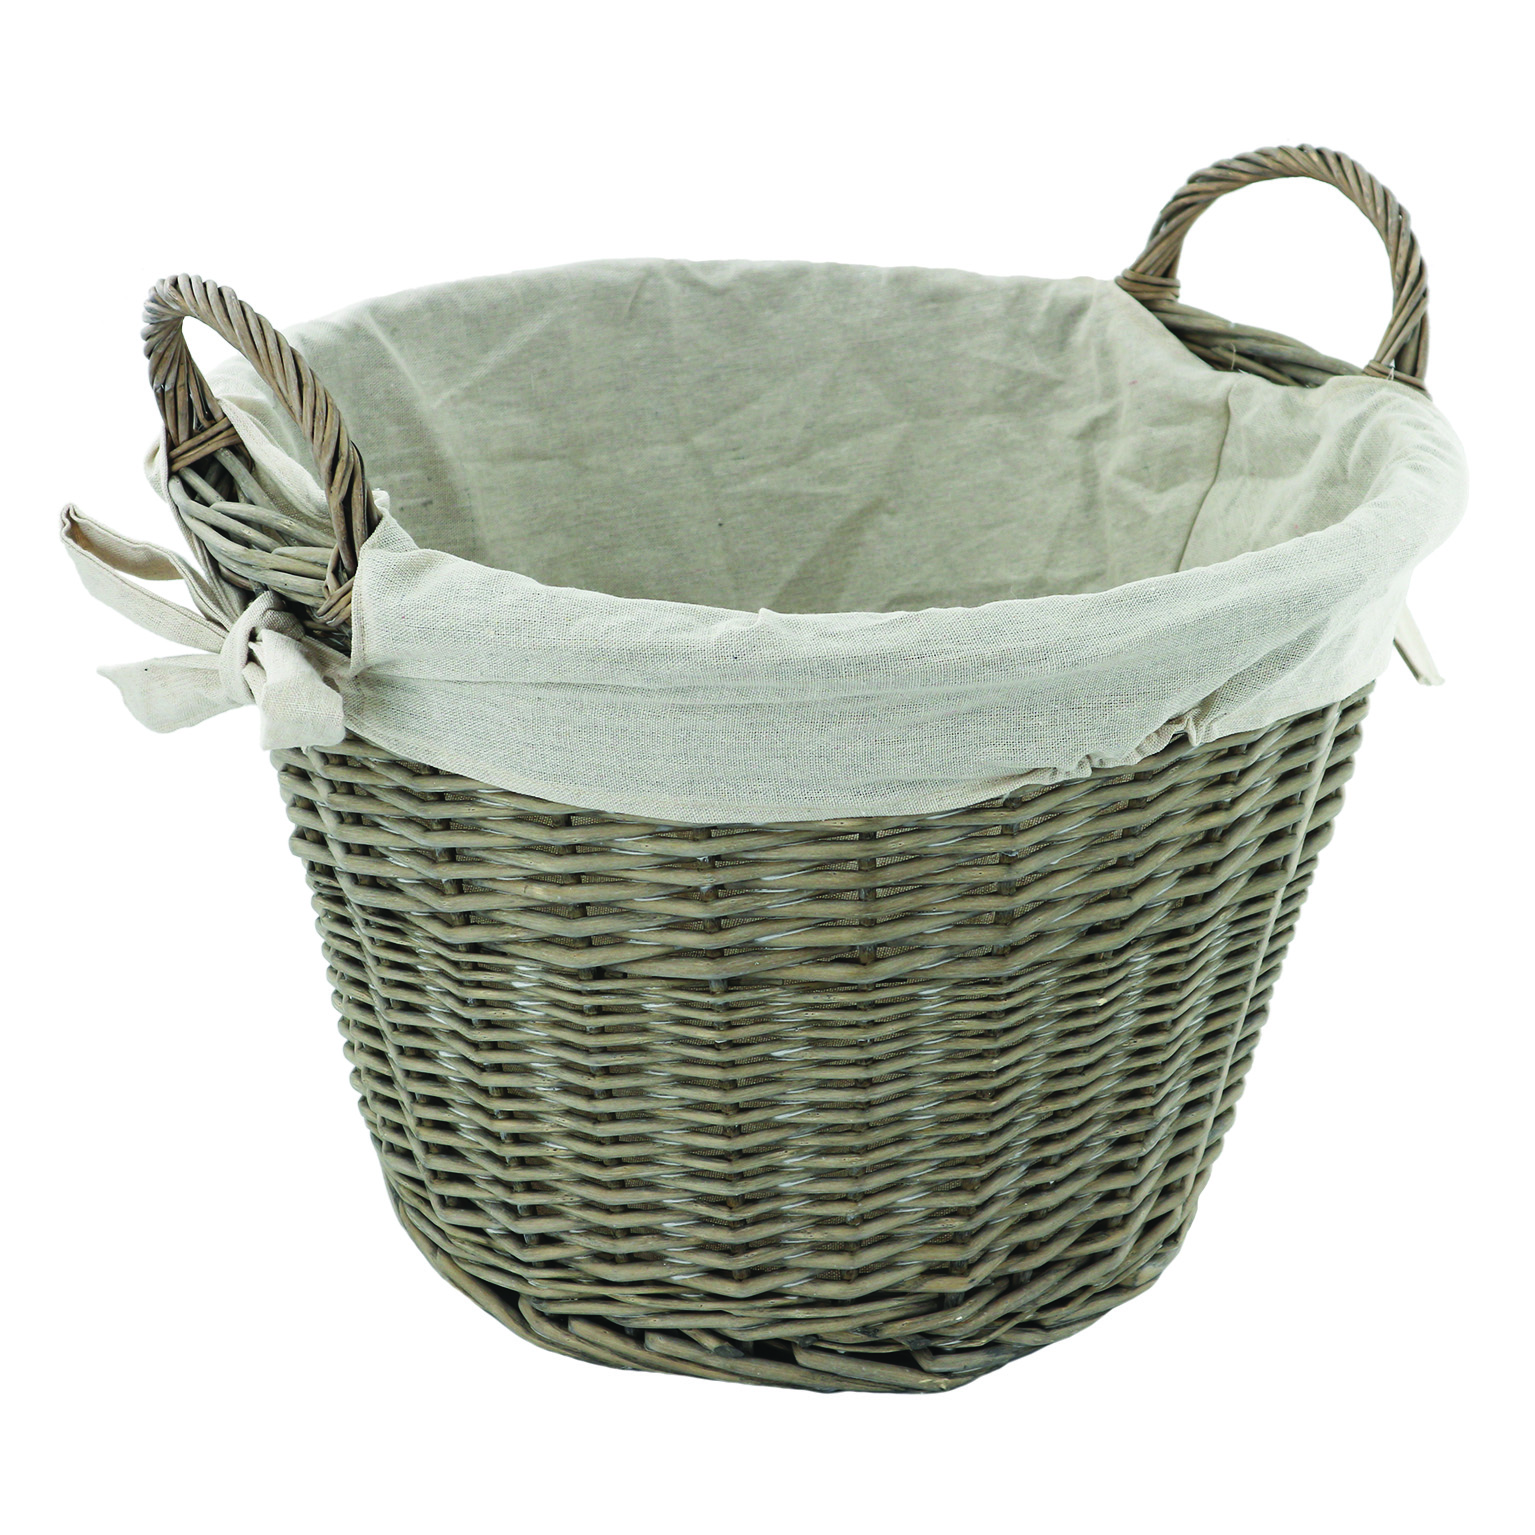 Deville Grey Round Wicker Basket with Jute Liner